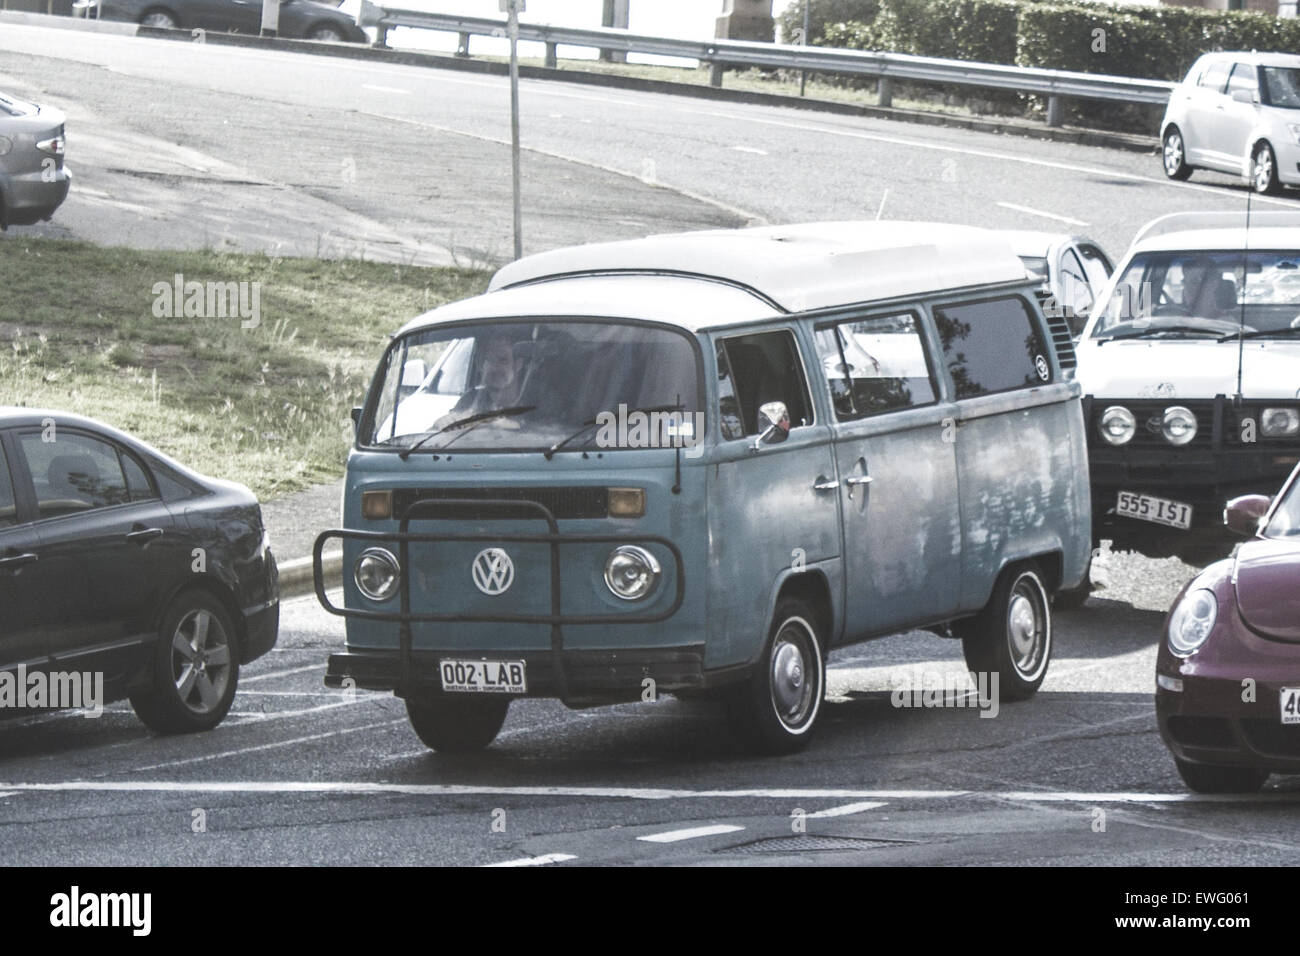 Volkswagen Van at Intersection Stock Photo